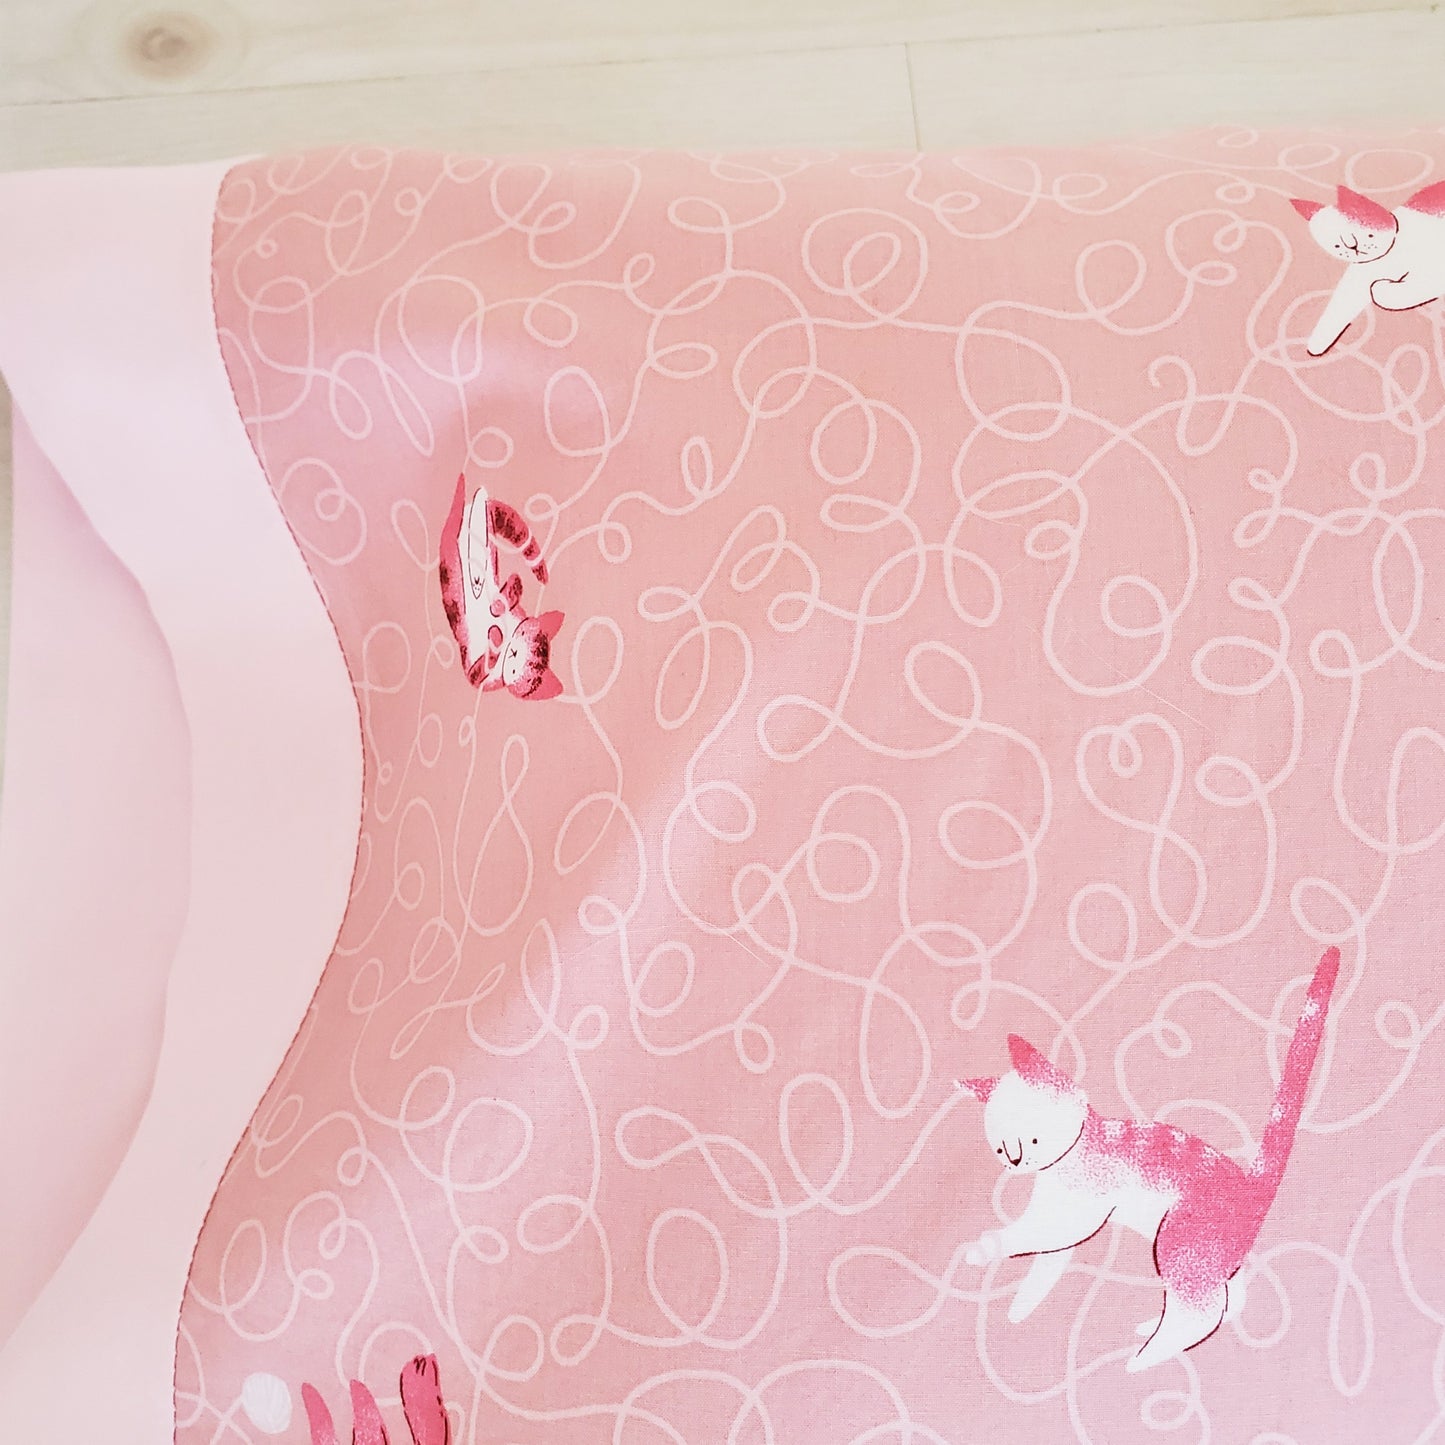 Organic Toddler Pillowcase with Pink Kitties